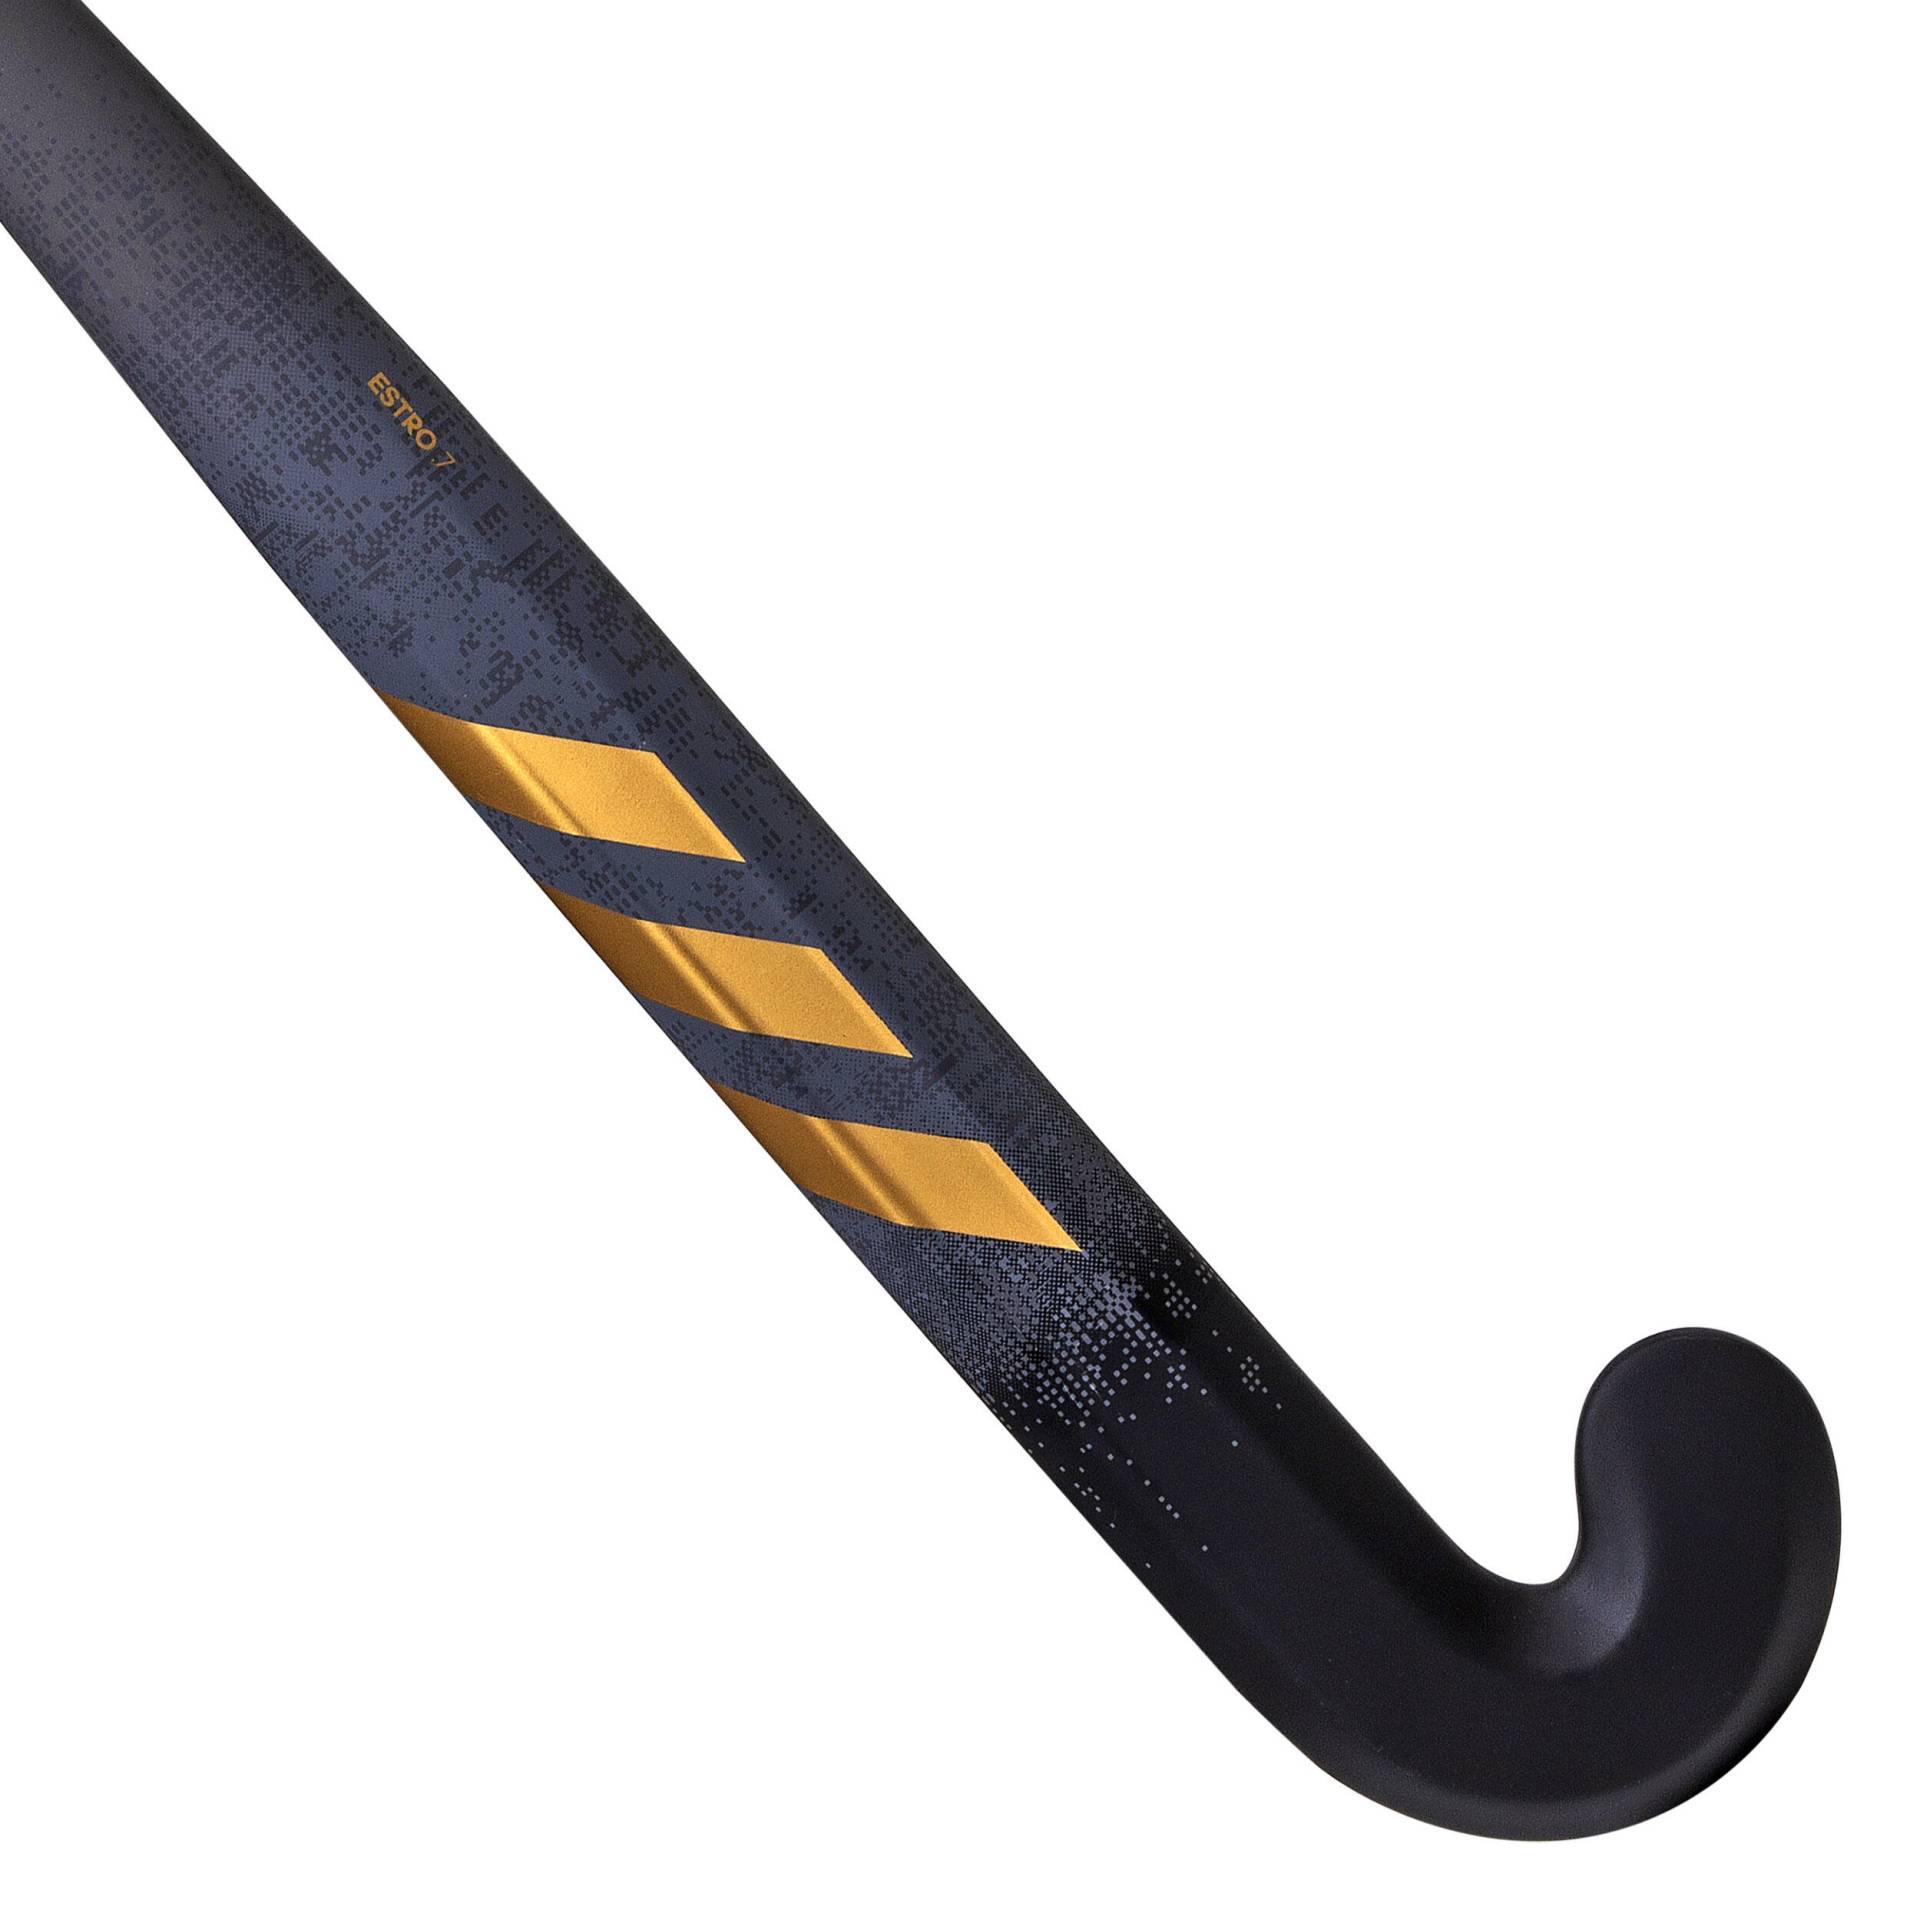 Damen/Herren Feldhockeyschläger Fortgeschrittene Mid Bow 20 % Carbon - ADIDAS Estro 7 schwarz/gold von Adidas